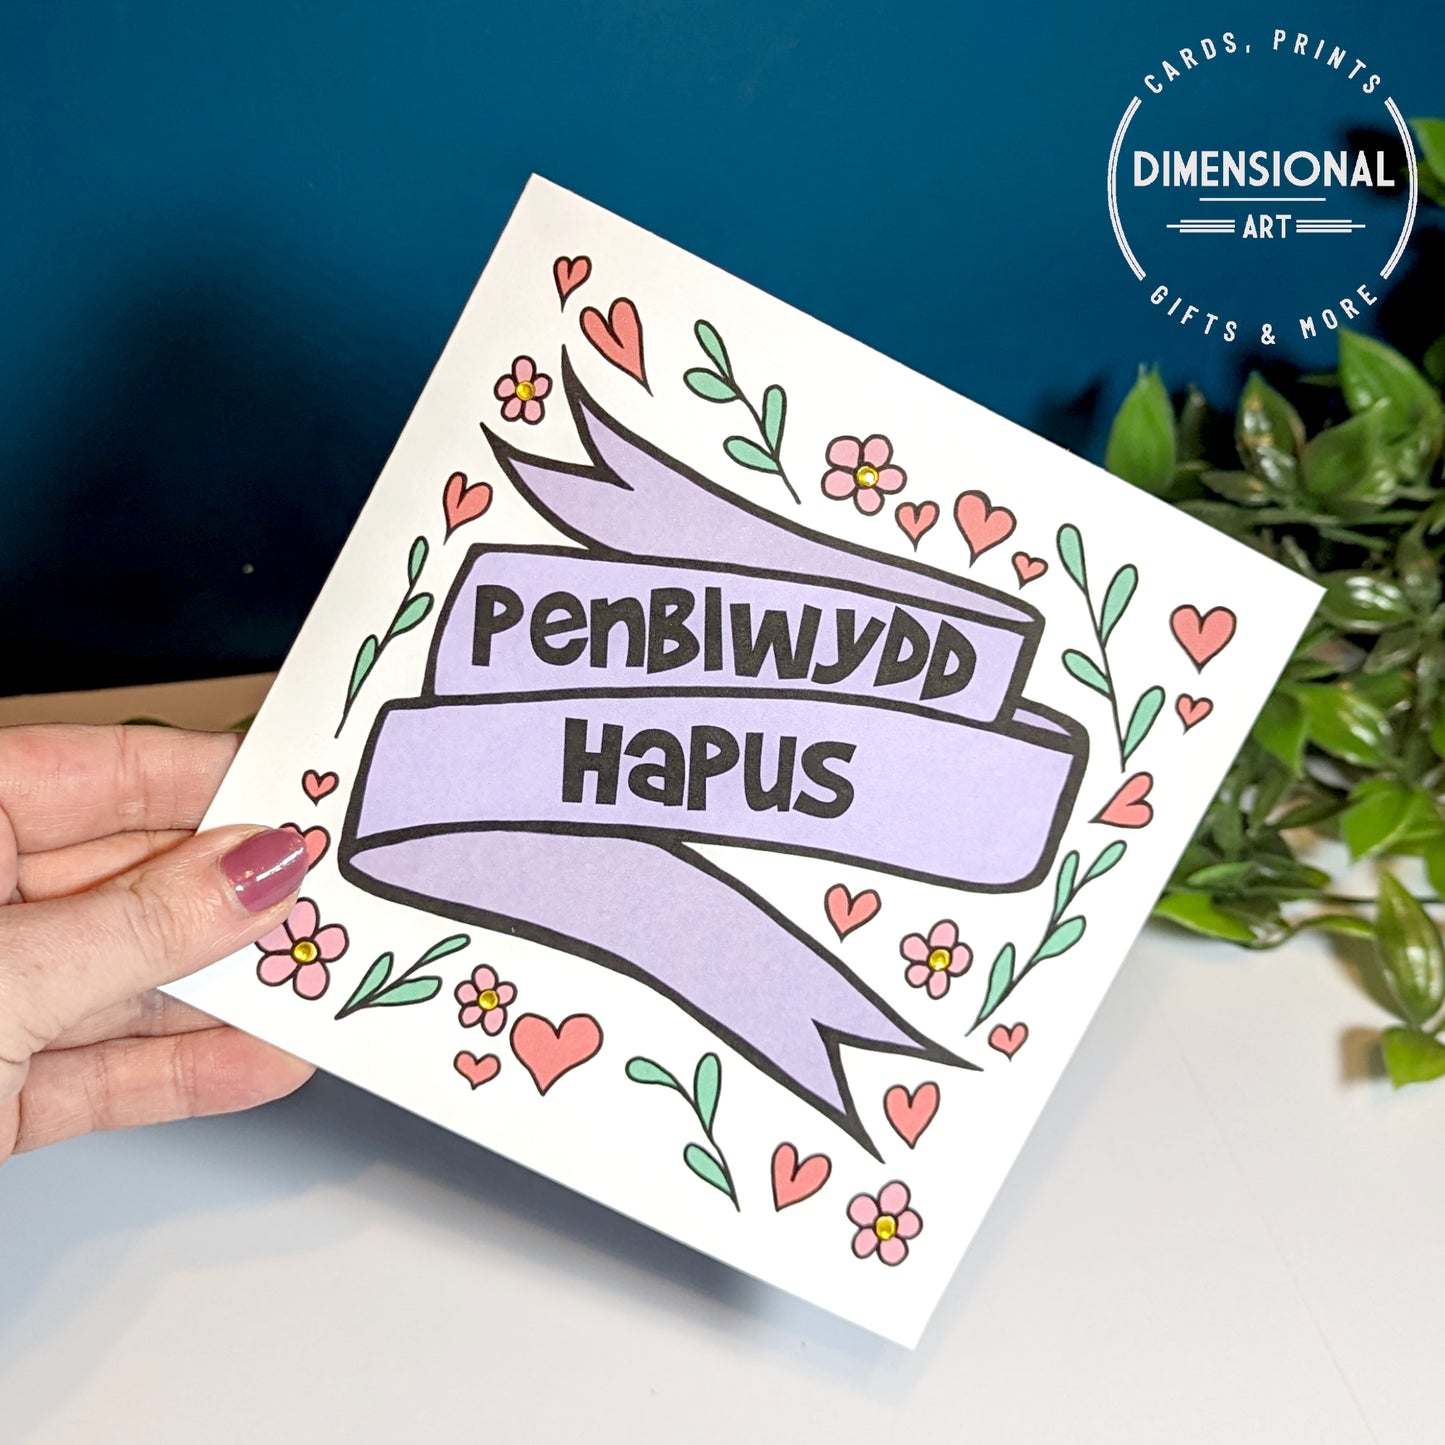 Penblwydd Hapus (Birthday Card) Welsh Card